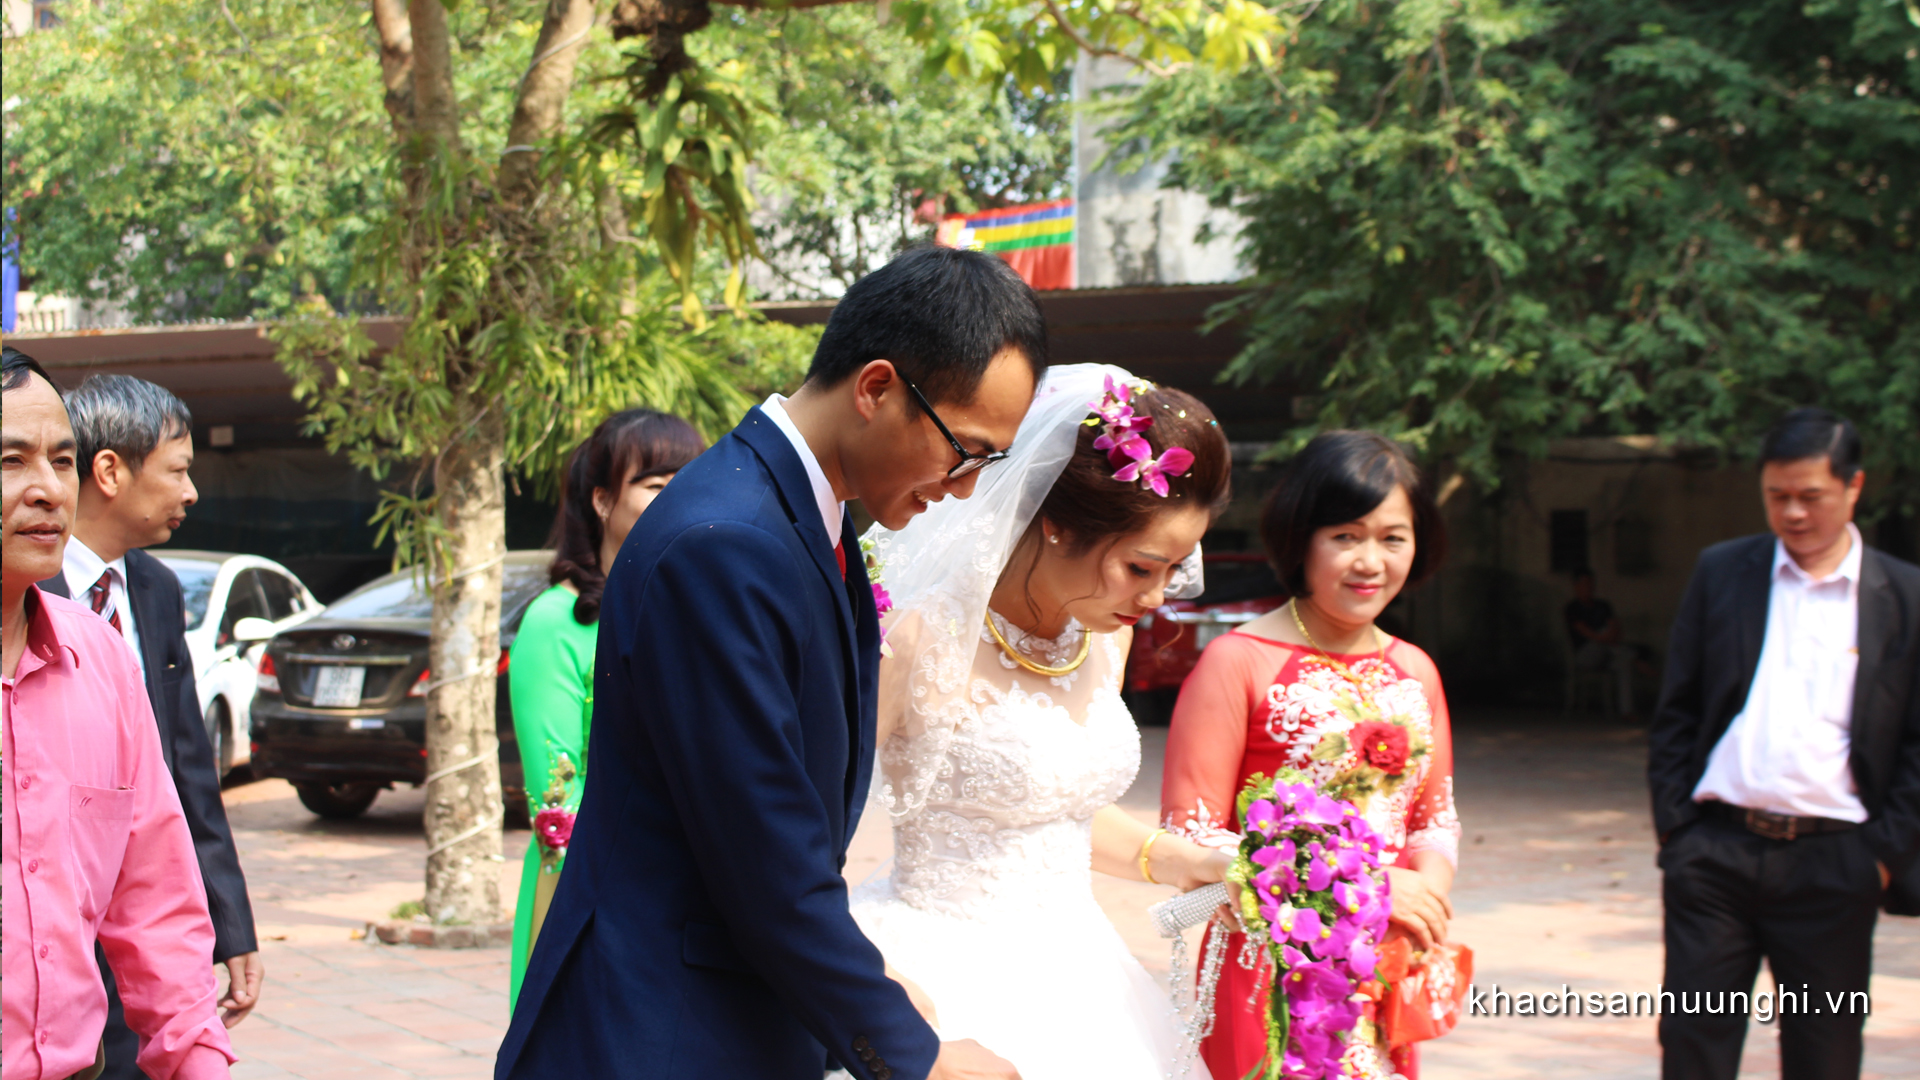 Đám cưới tại Khách sạn Hữu Nghị Thái Nguyên (11)